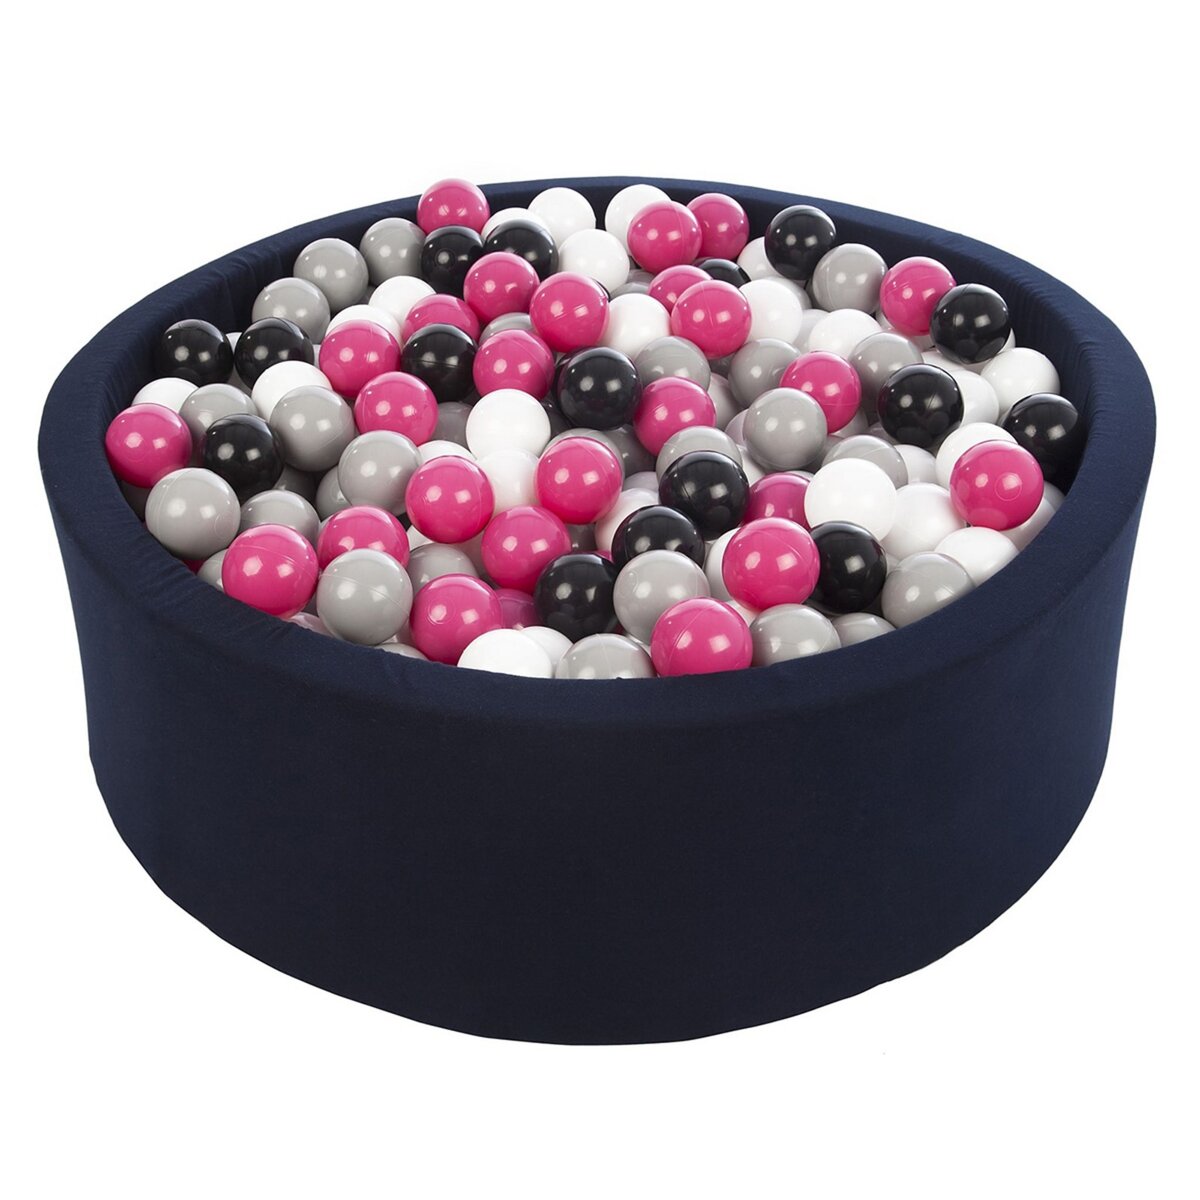  Piscine à balles Aire de jeu + 450 balles bleu marine noir, blanc, rose,gris